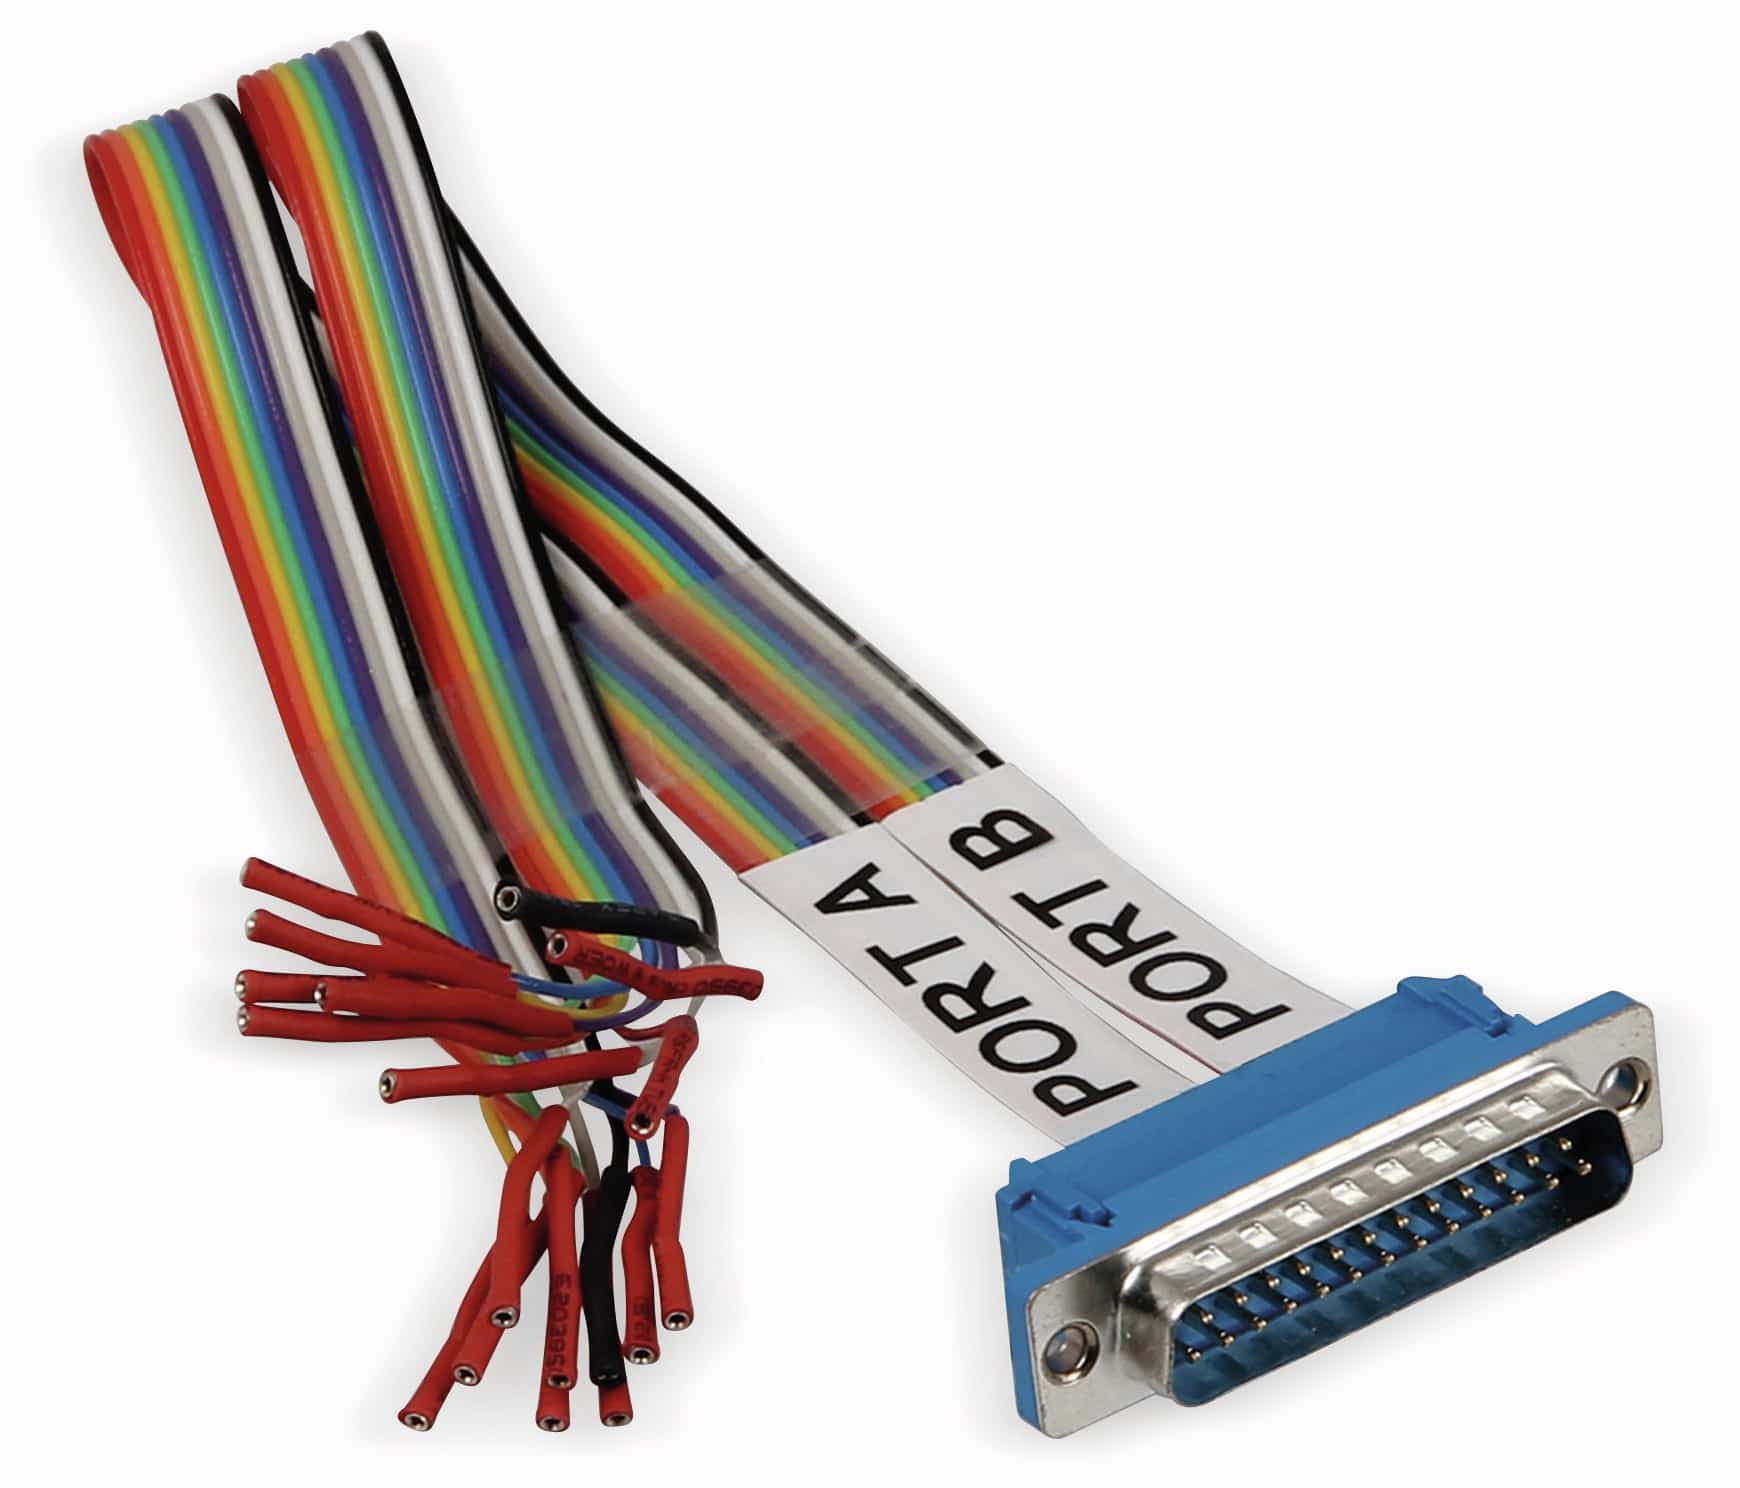 JOY-IT USB-Oszilloskop ScopeMega50, 2-Kanal, 48 MHz